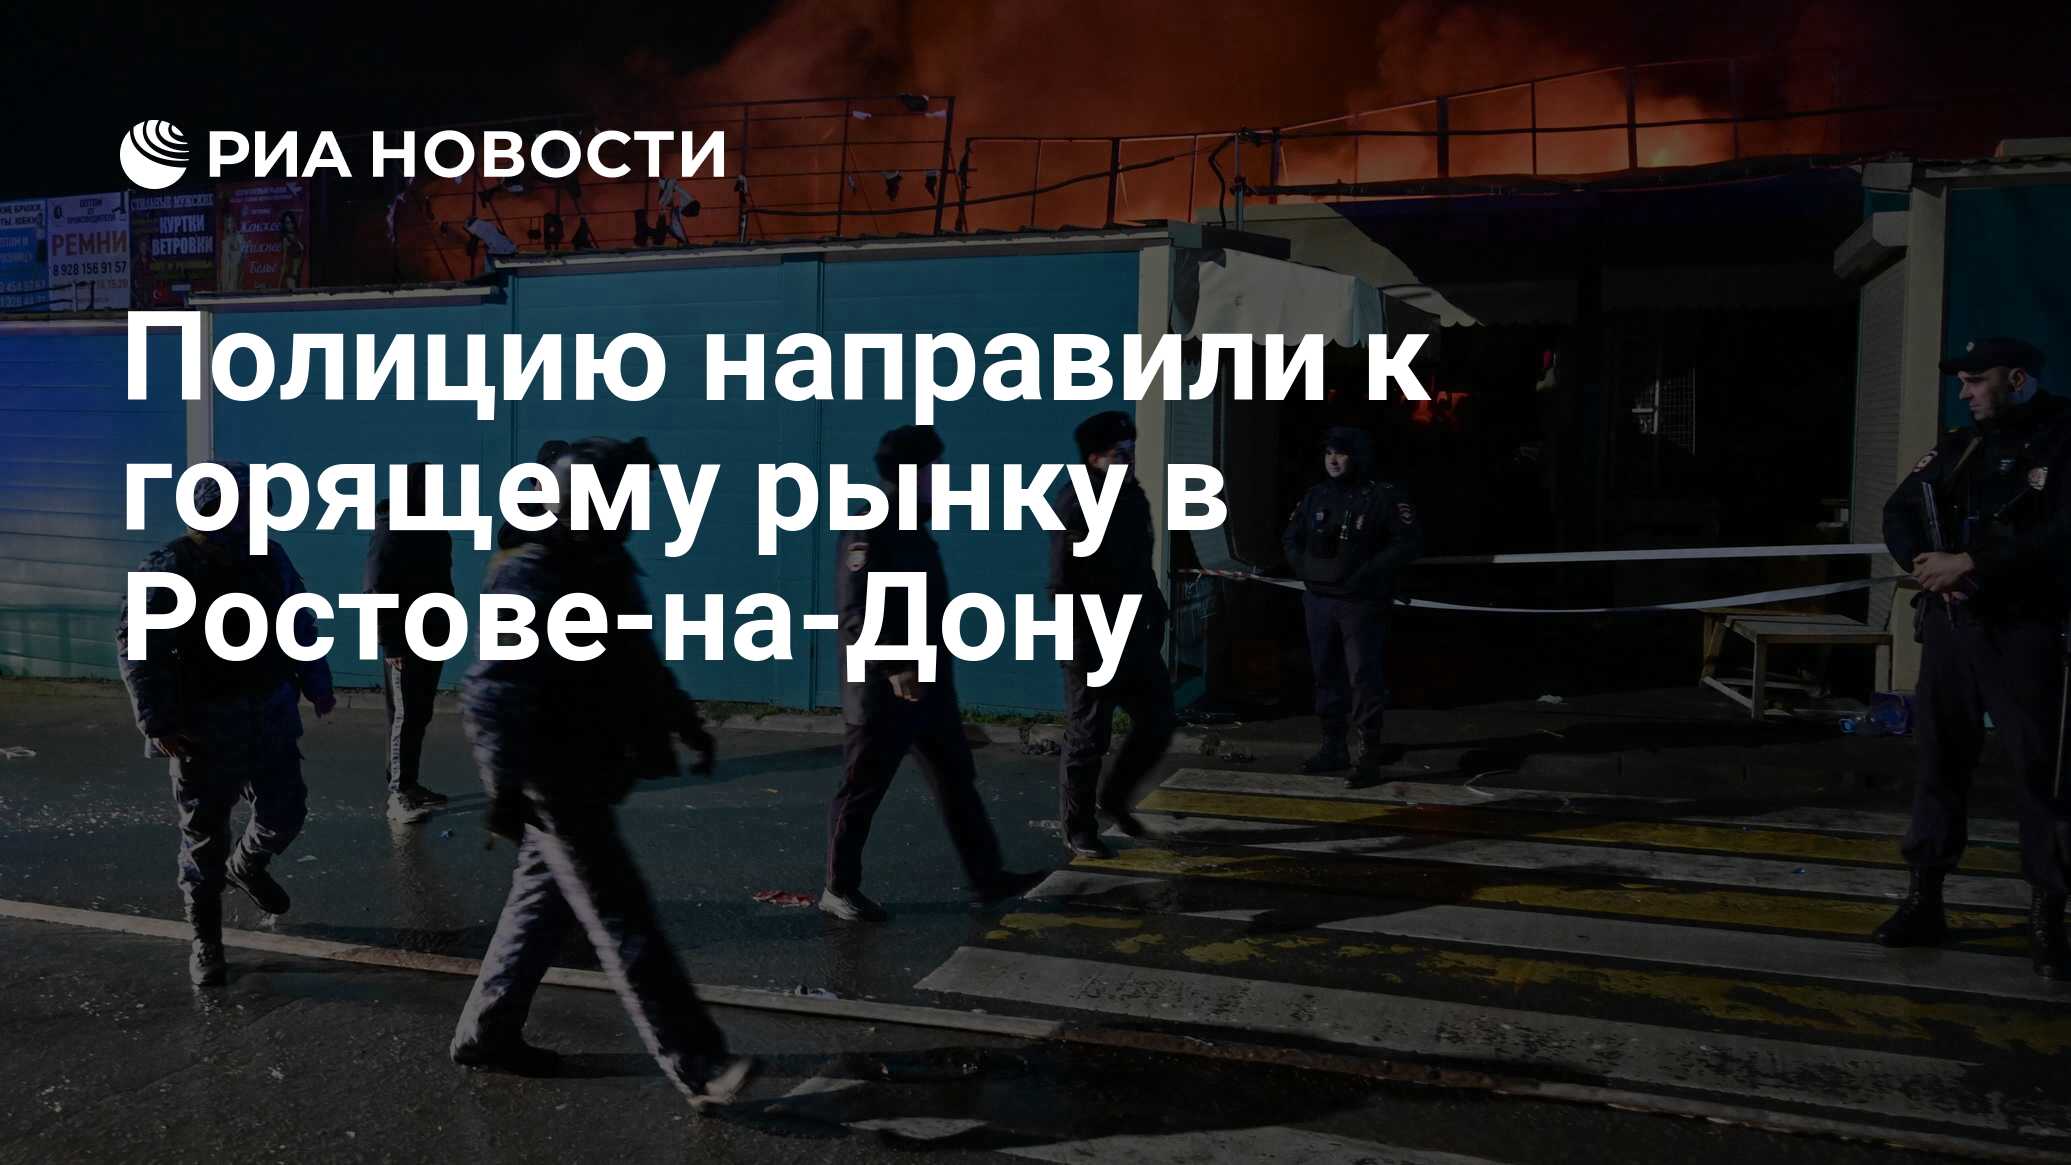 Причины повышенного присутствия полиции в Ростове-на-Дону сегодня